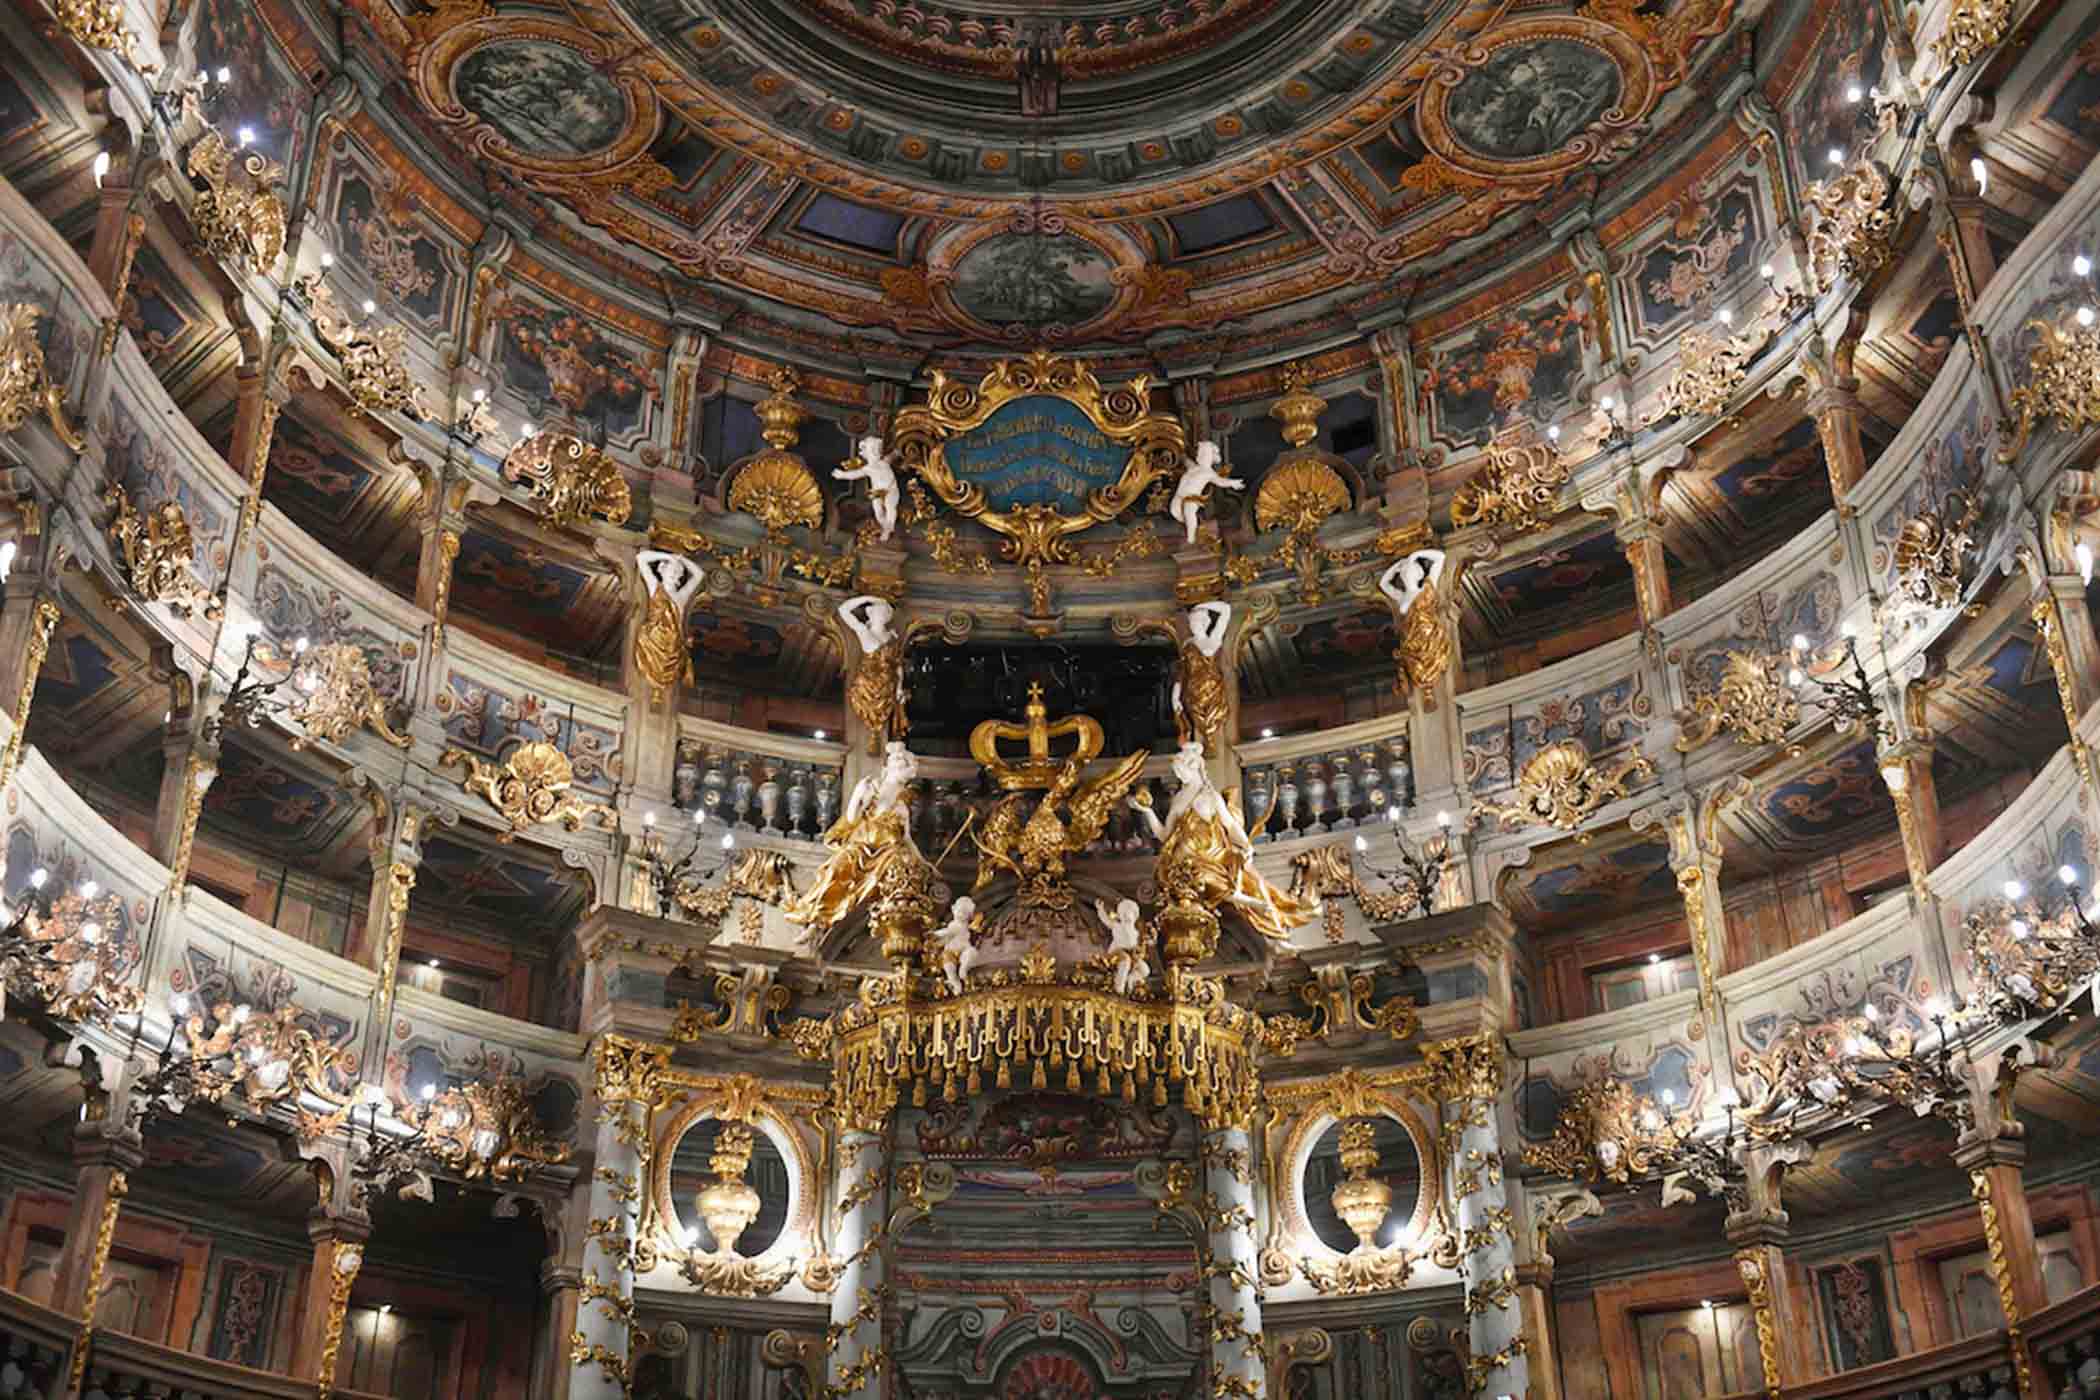 Quang cảnh các khán đài và các bức họa trên trần tại Nhà hát Opera Margrave ở Bayreuth sau khi mở cửa trở lại. (Ảnh: Christof Stache/AFP qua Getty Images)